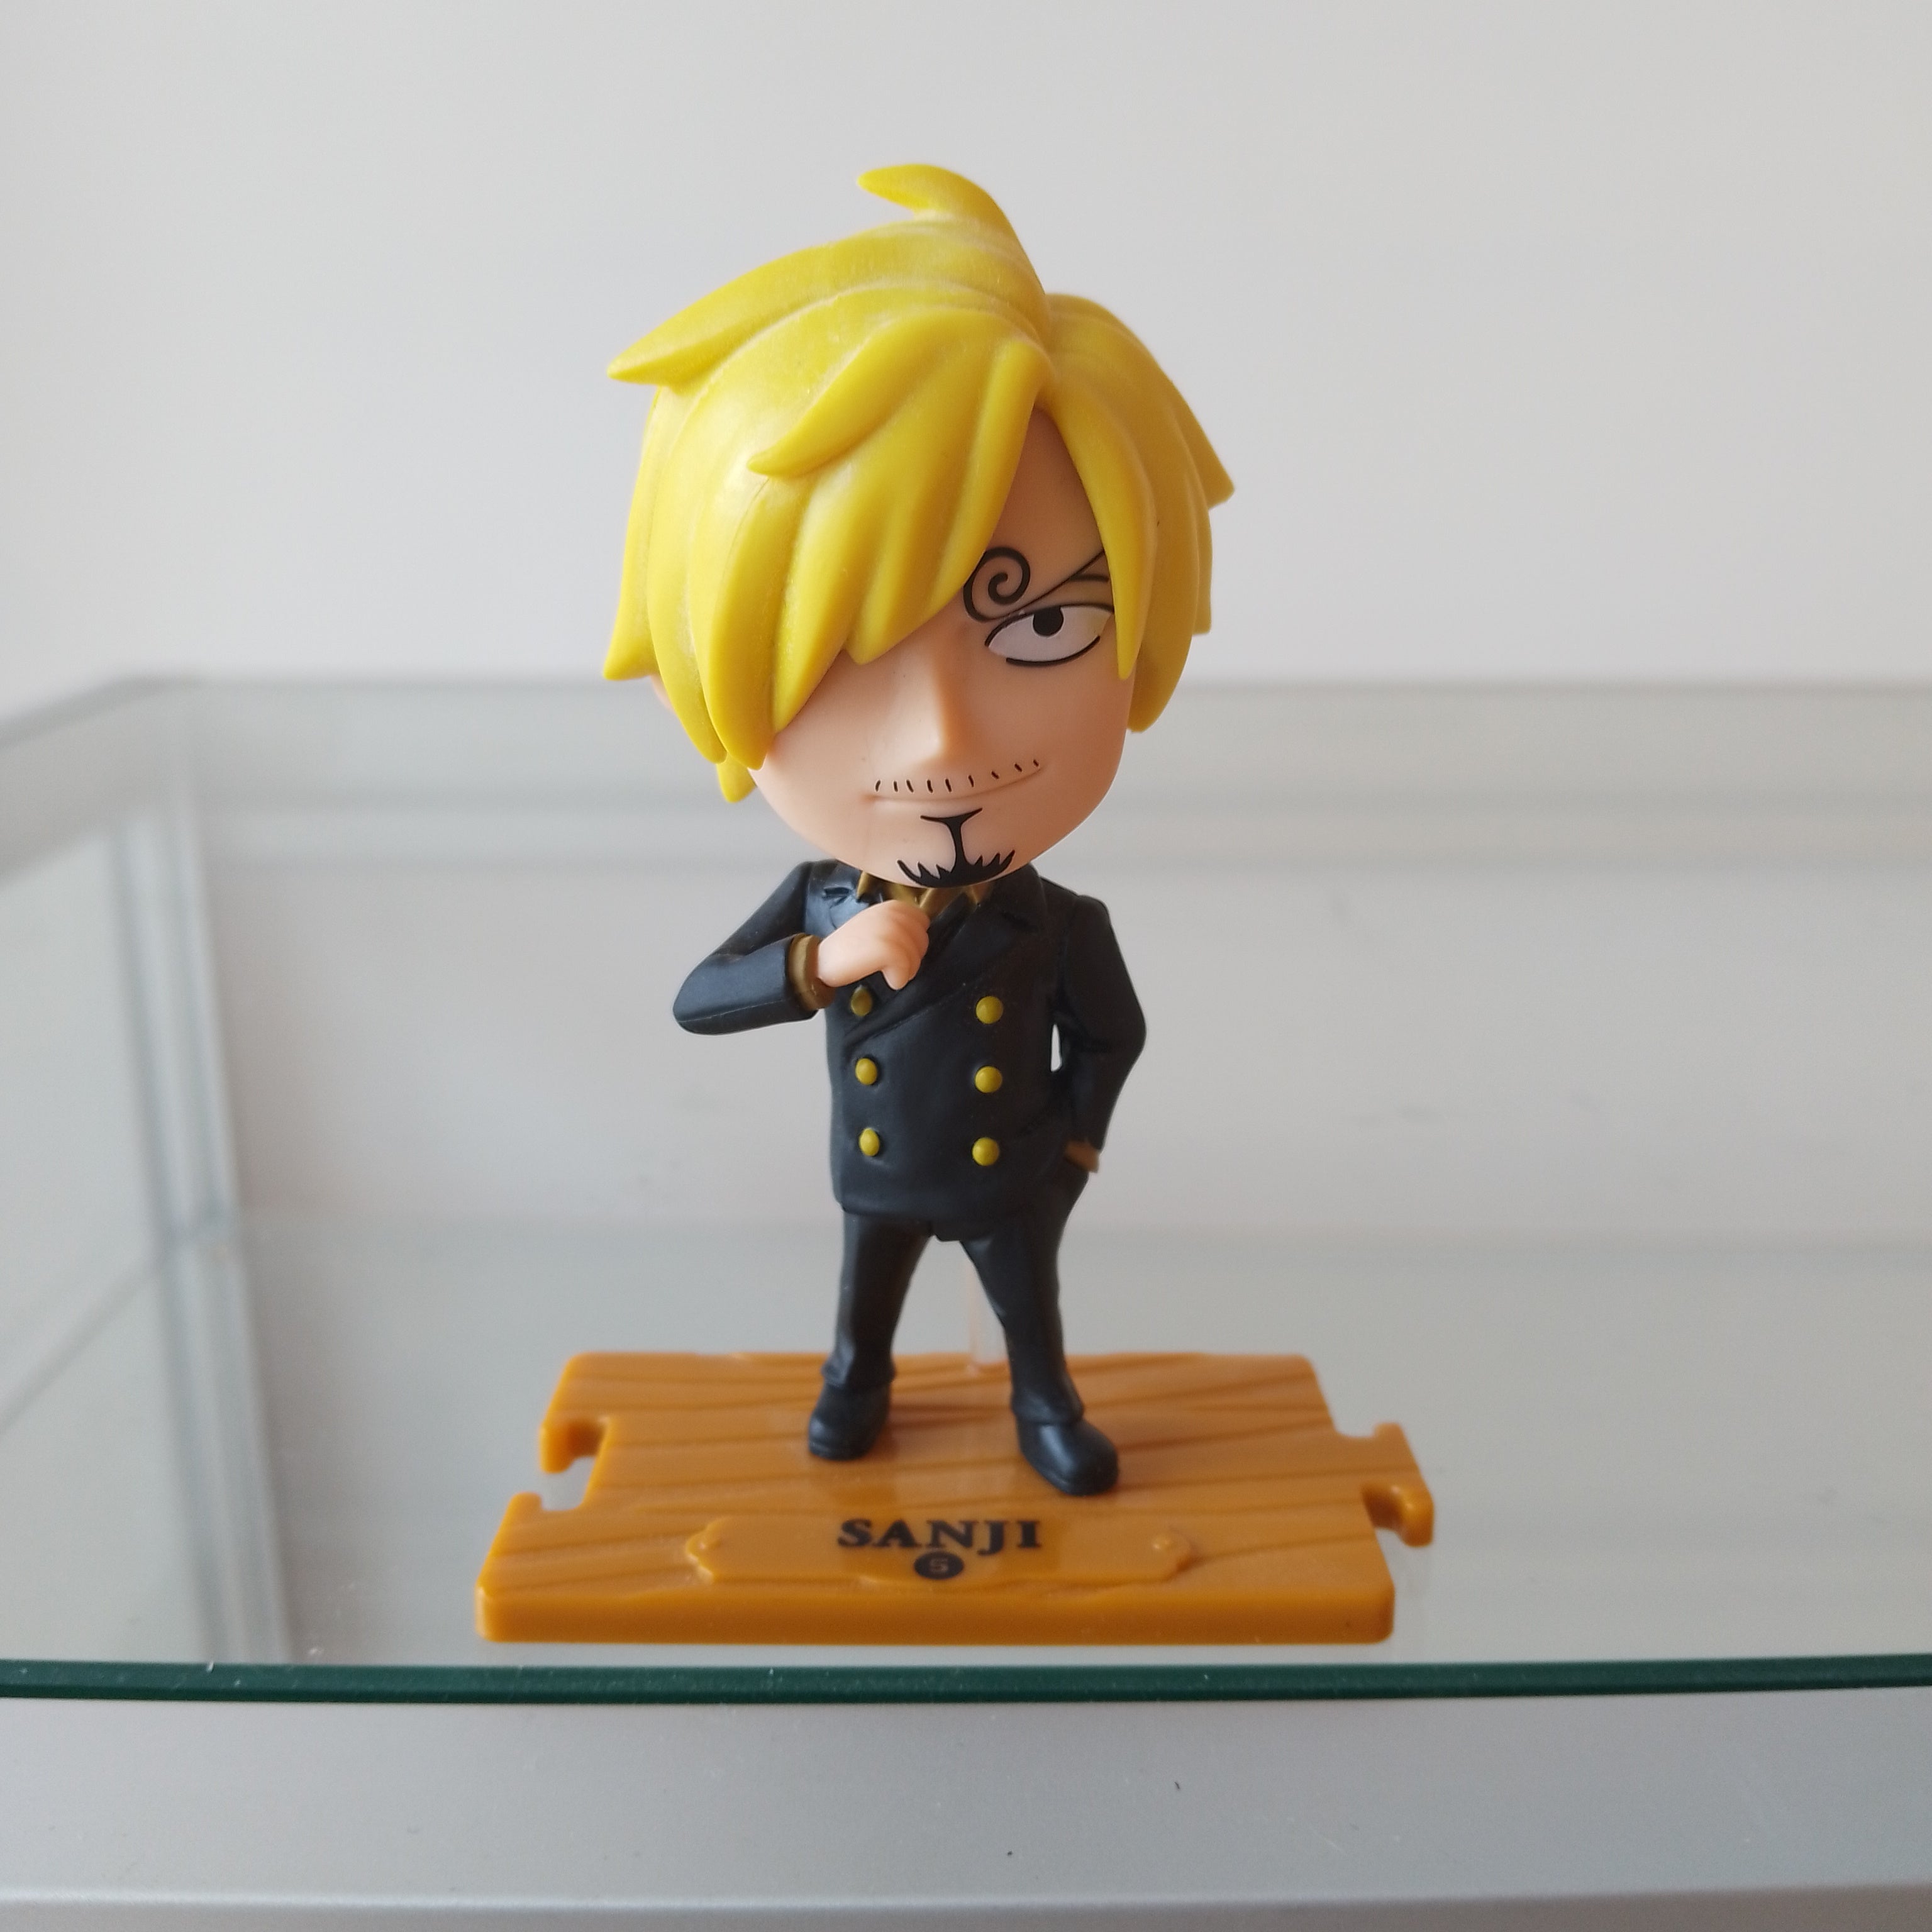 Sanji - One Piece Toy Figure - Mindzai Toy Shop